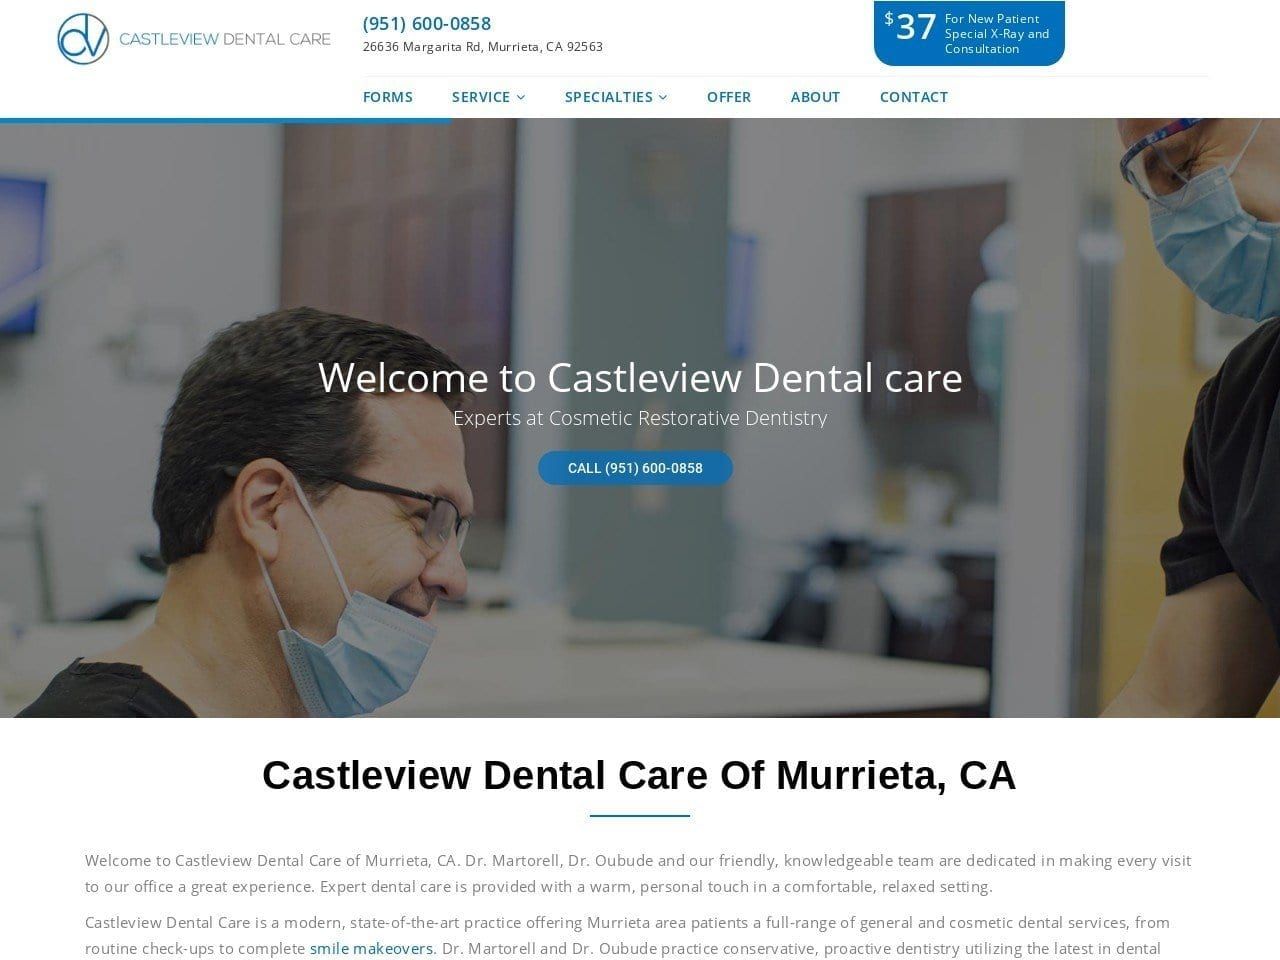 Castleview Dental Care Website Screenshot from castleviewdentalcare.com